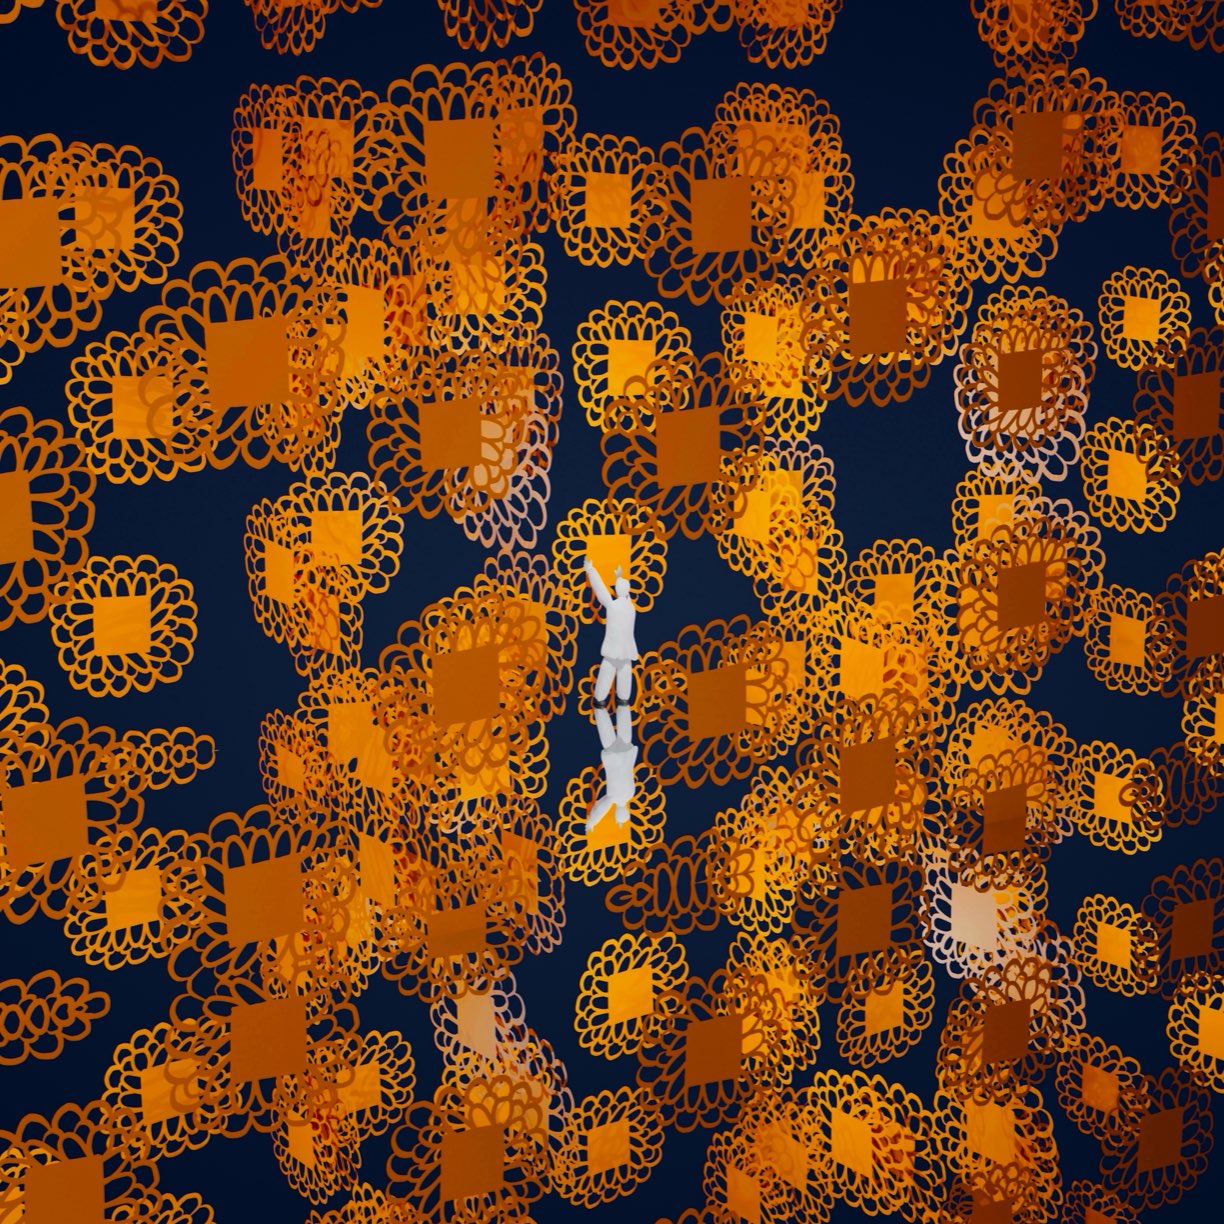 作品「Horizon」に関連してお勧めする、その他のデジタルアート作品「Flower Pixel」の画像です。